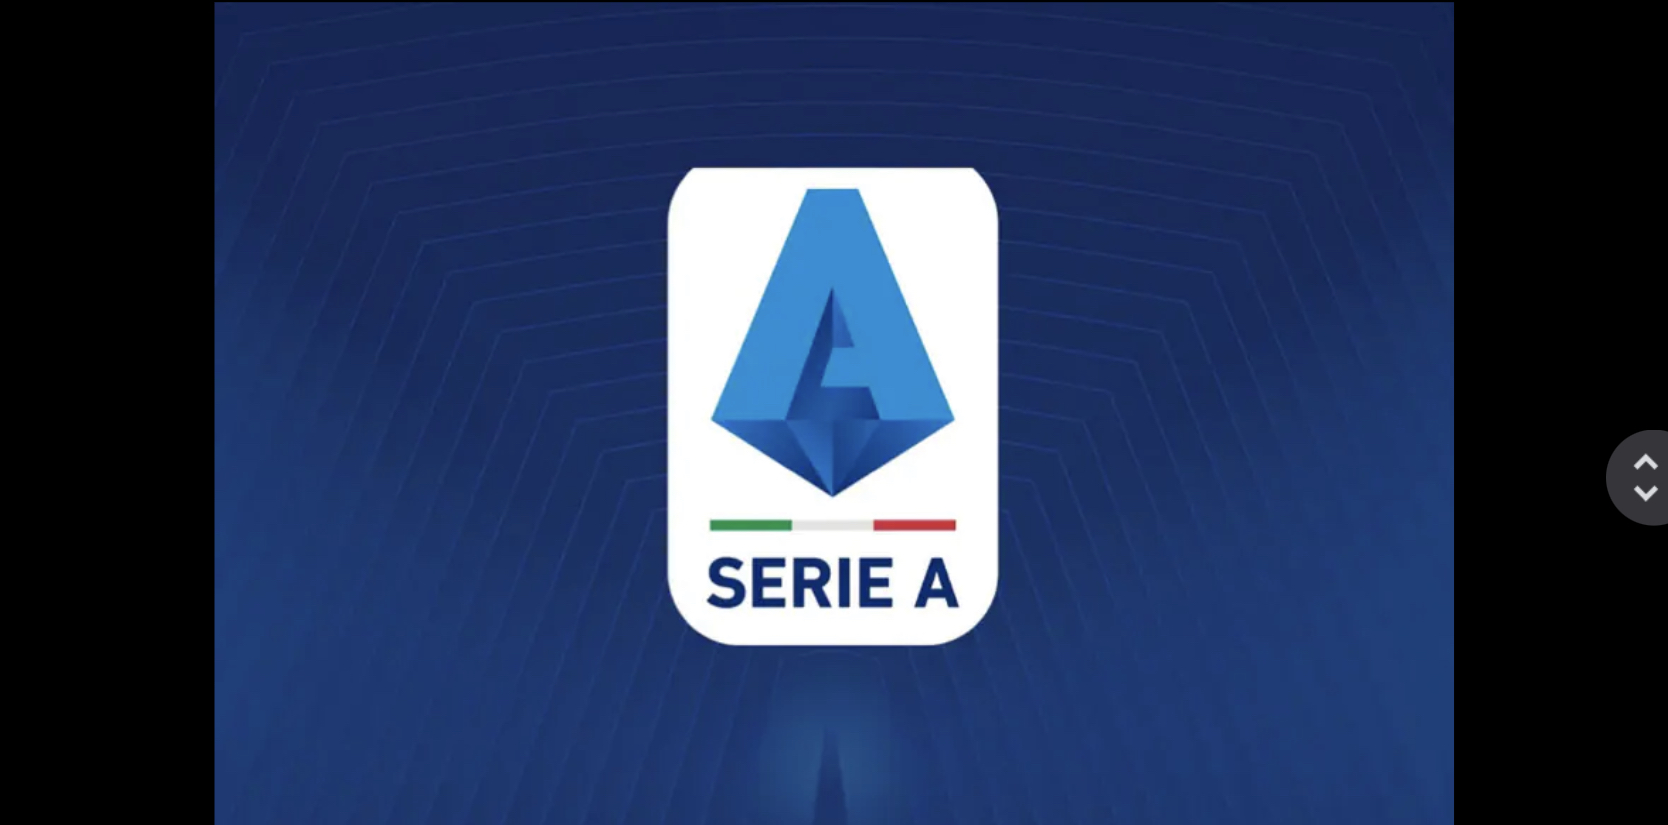 The establishment of the Italian Serie A